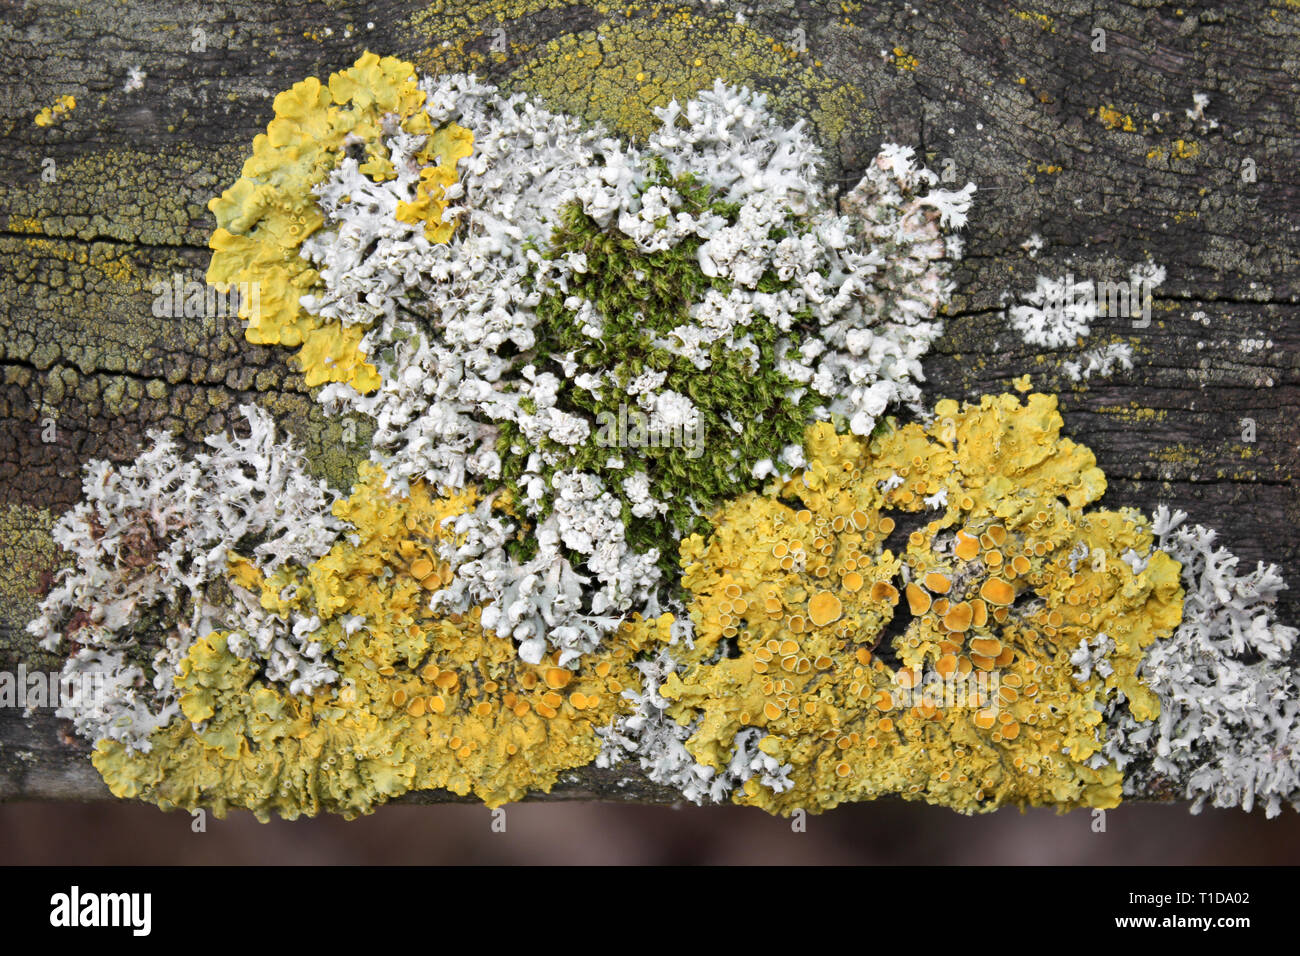 Giallo Foliose Lichen Xanthoria parietina lungo con il grigio Lichen Physcia tenella e Moss su legno ad albero Foto Stock